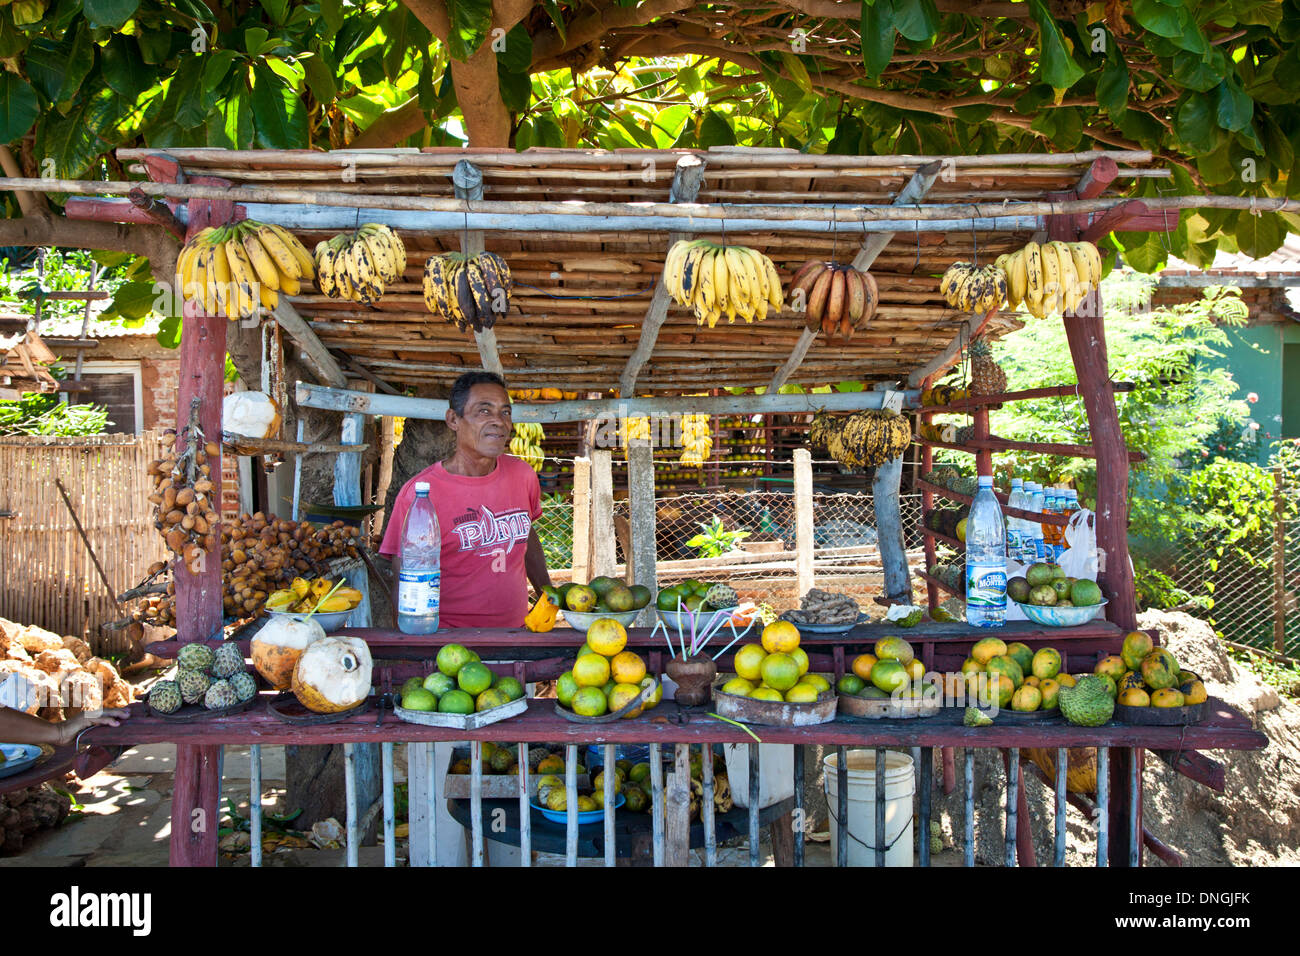 Obstverkäufer in Kuba Stockfoto